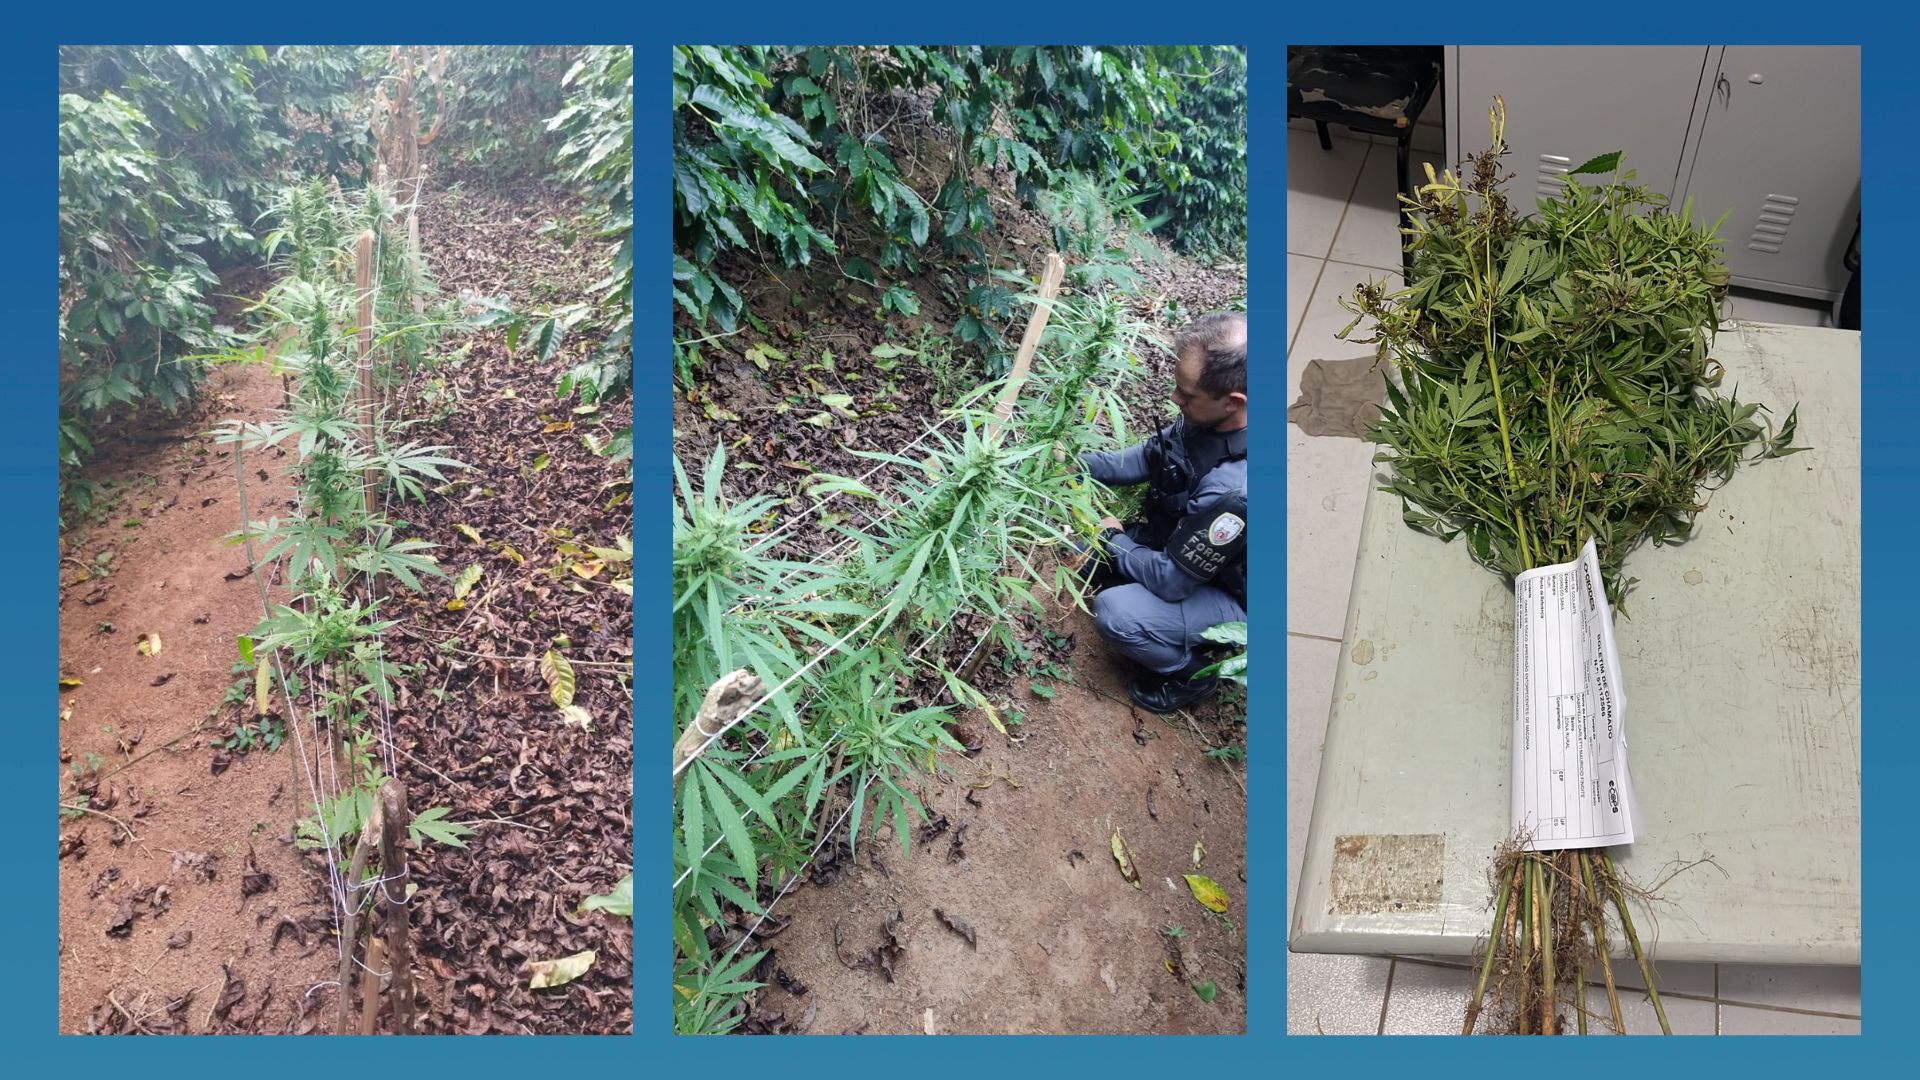 17 pés da planta foram encontrados pela após denúncia anônima nesta quarta-feira (9) em Irupi. Dono não foi localizado